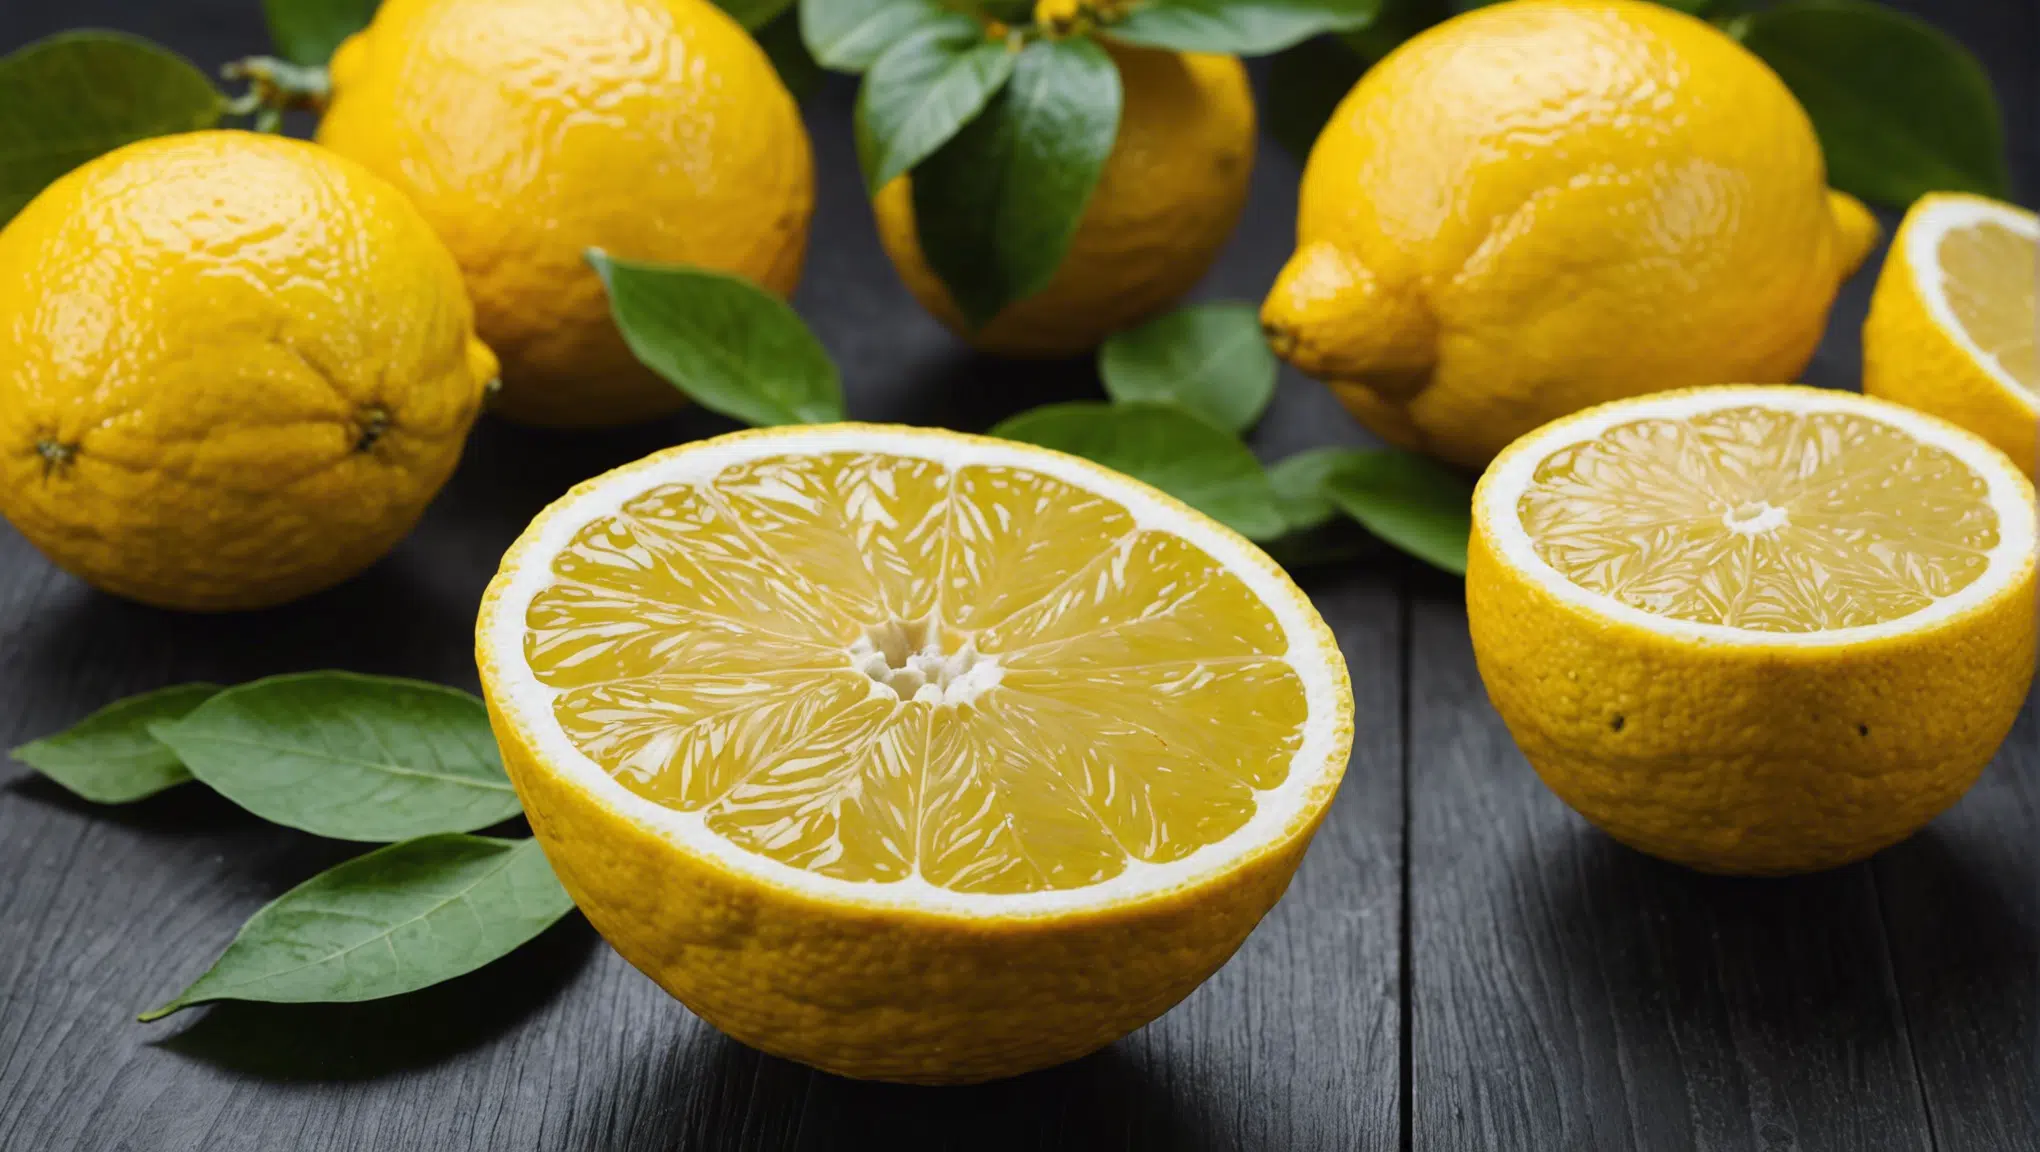 découvrez comment fabriquer un diffuseur d'odeur au citron en suivant 3 étapes simples. apportez une touche de fraîcheur à votre intérieur avec ce tutoriel facile à suivre.